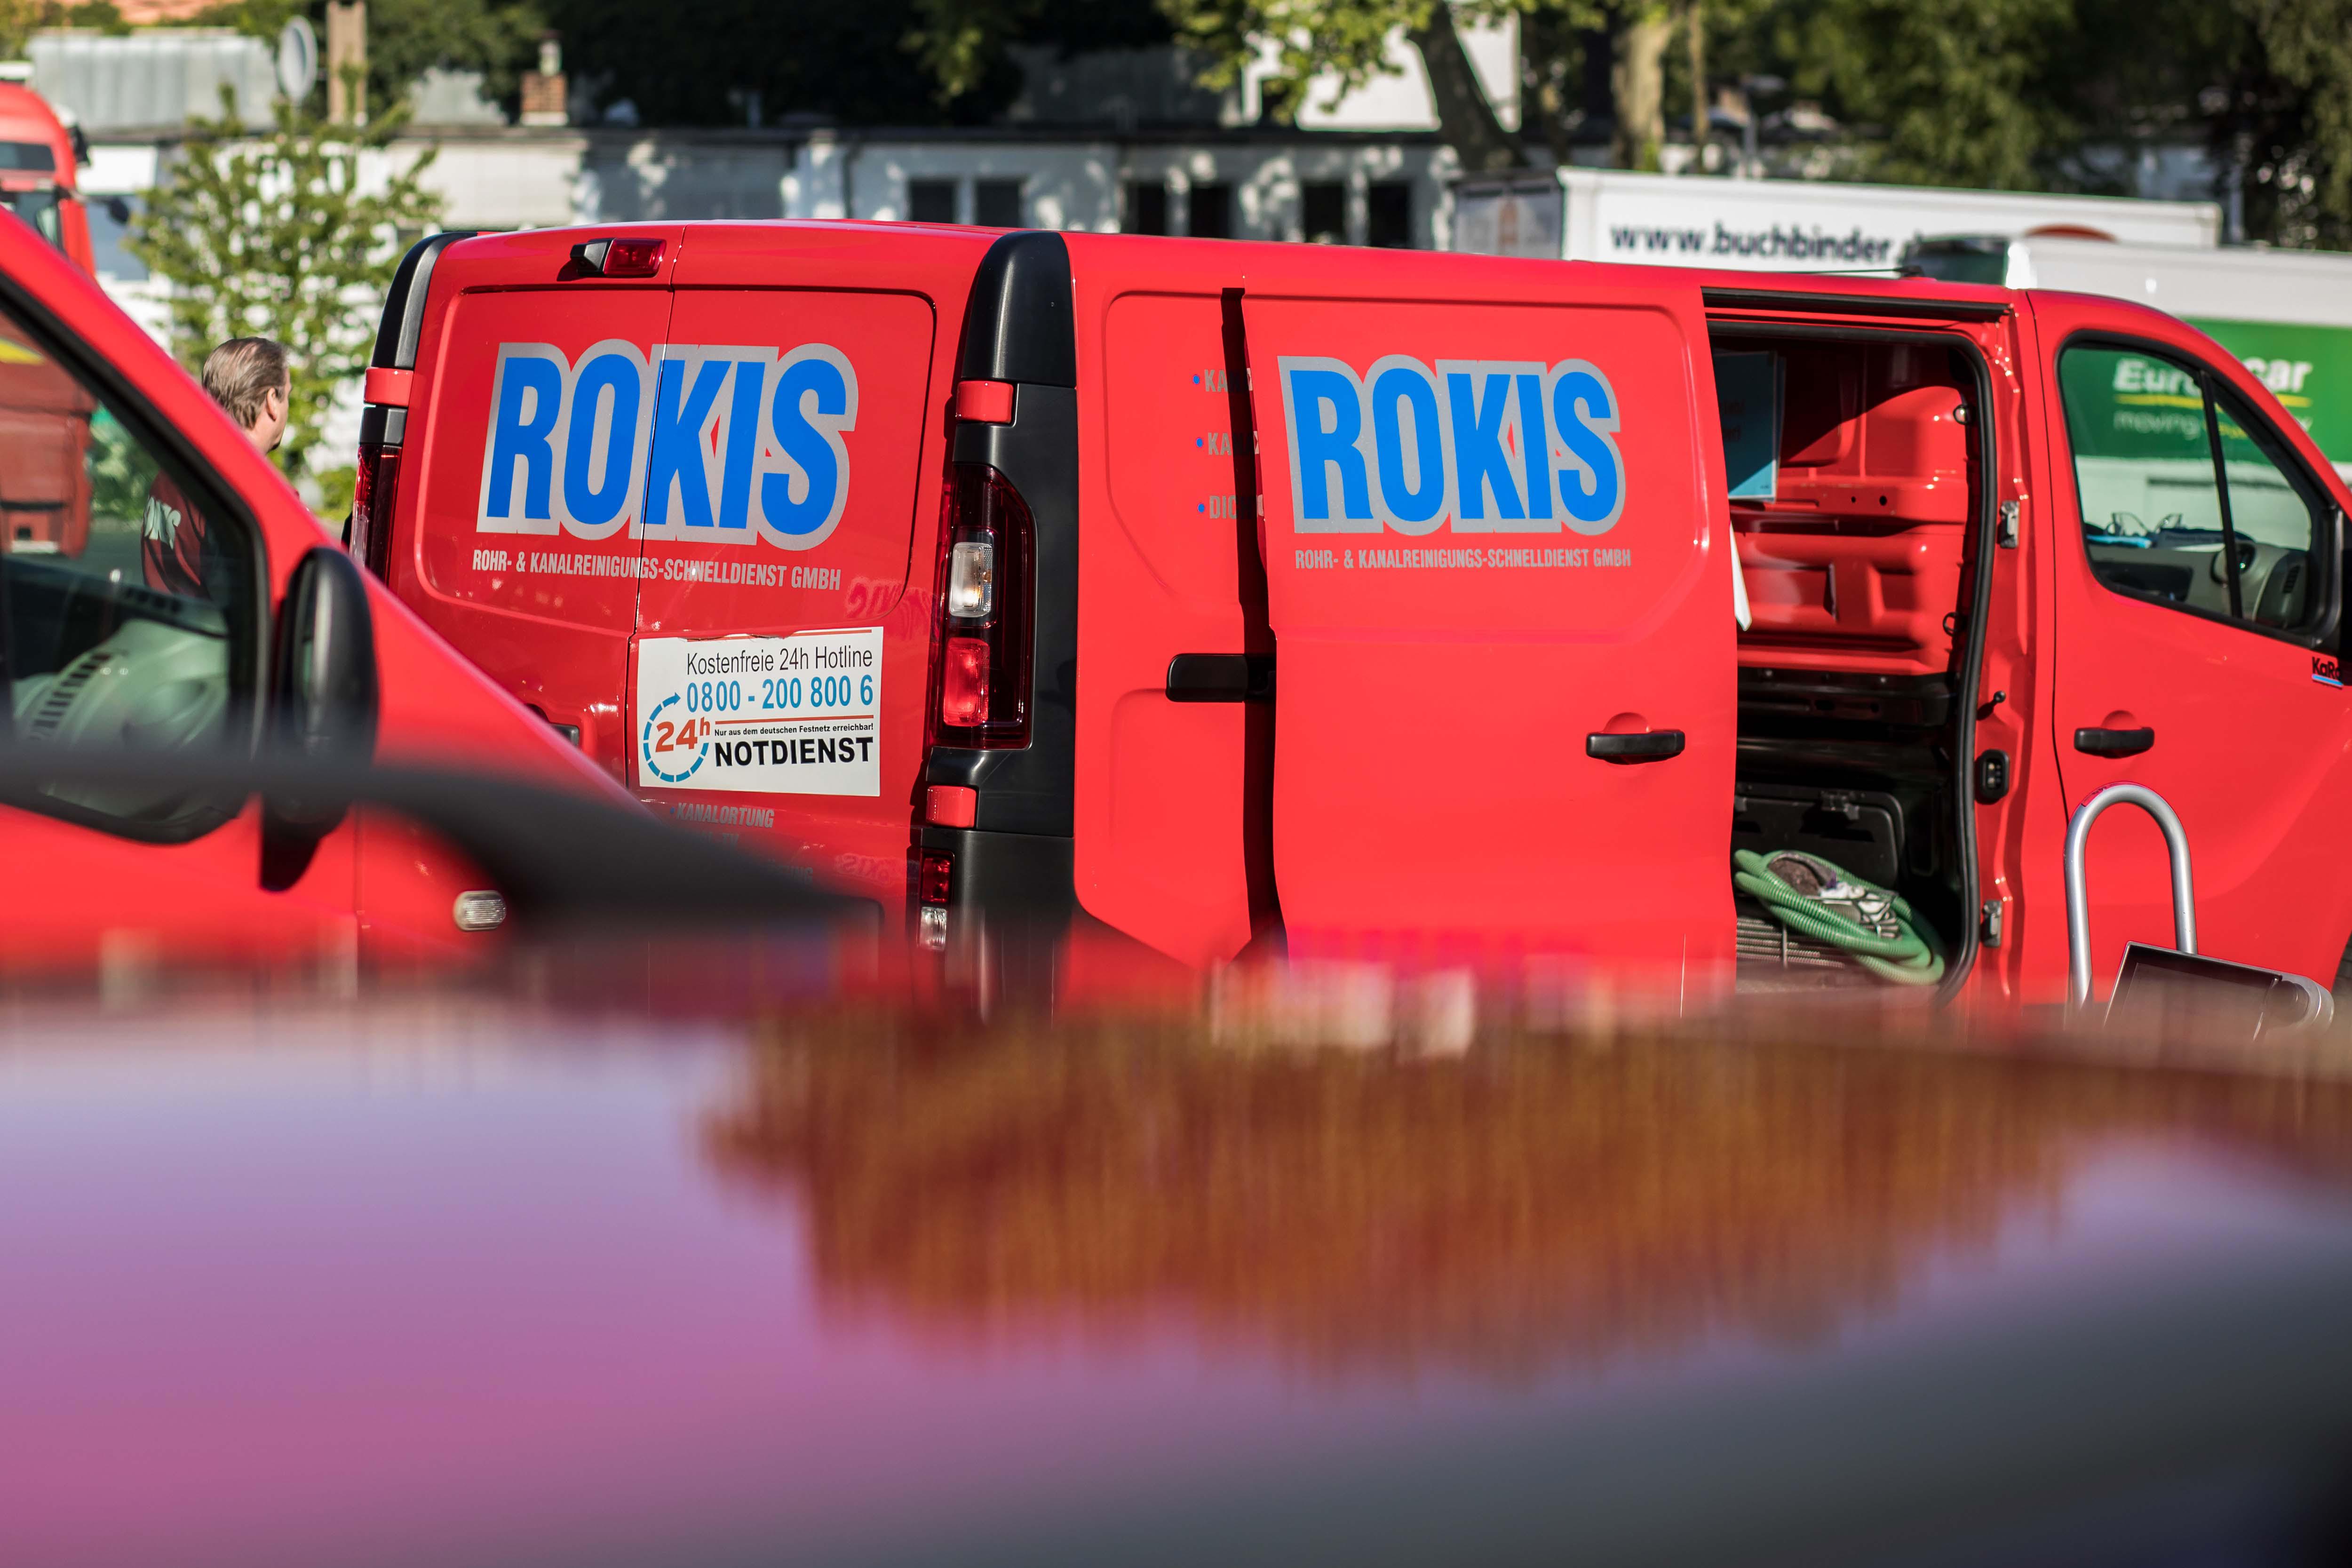 ROKIS Rohr- u. Kanalreinigungs-Schnelldienst GmbH